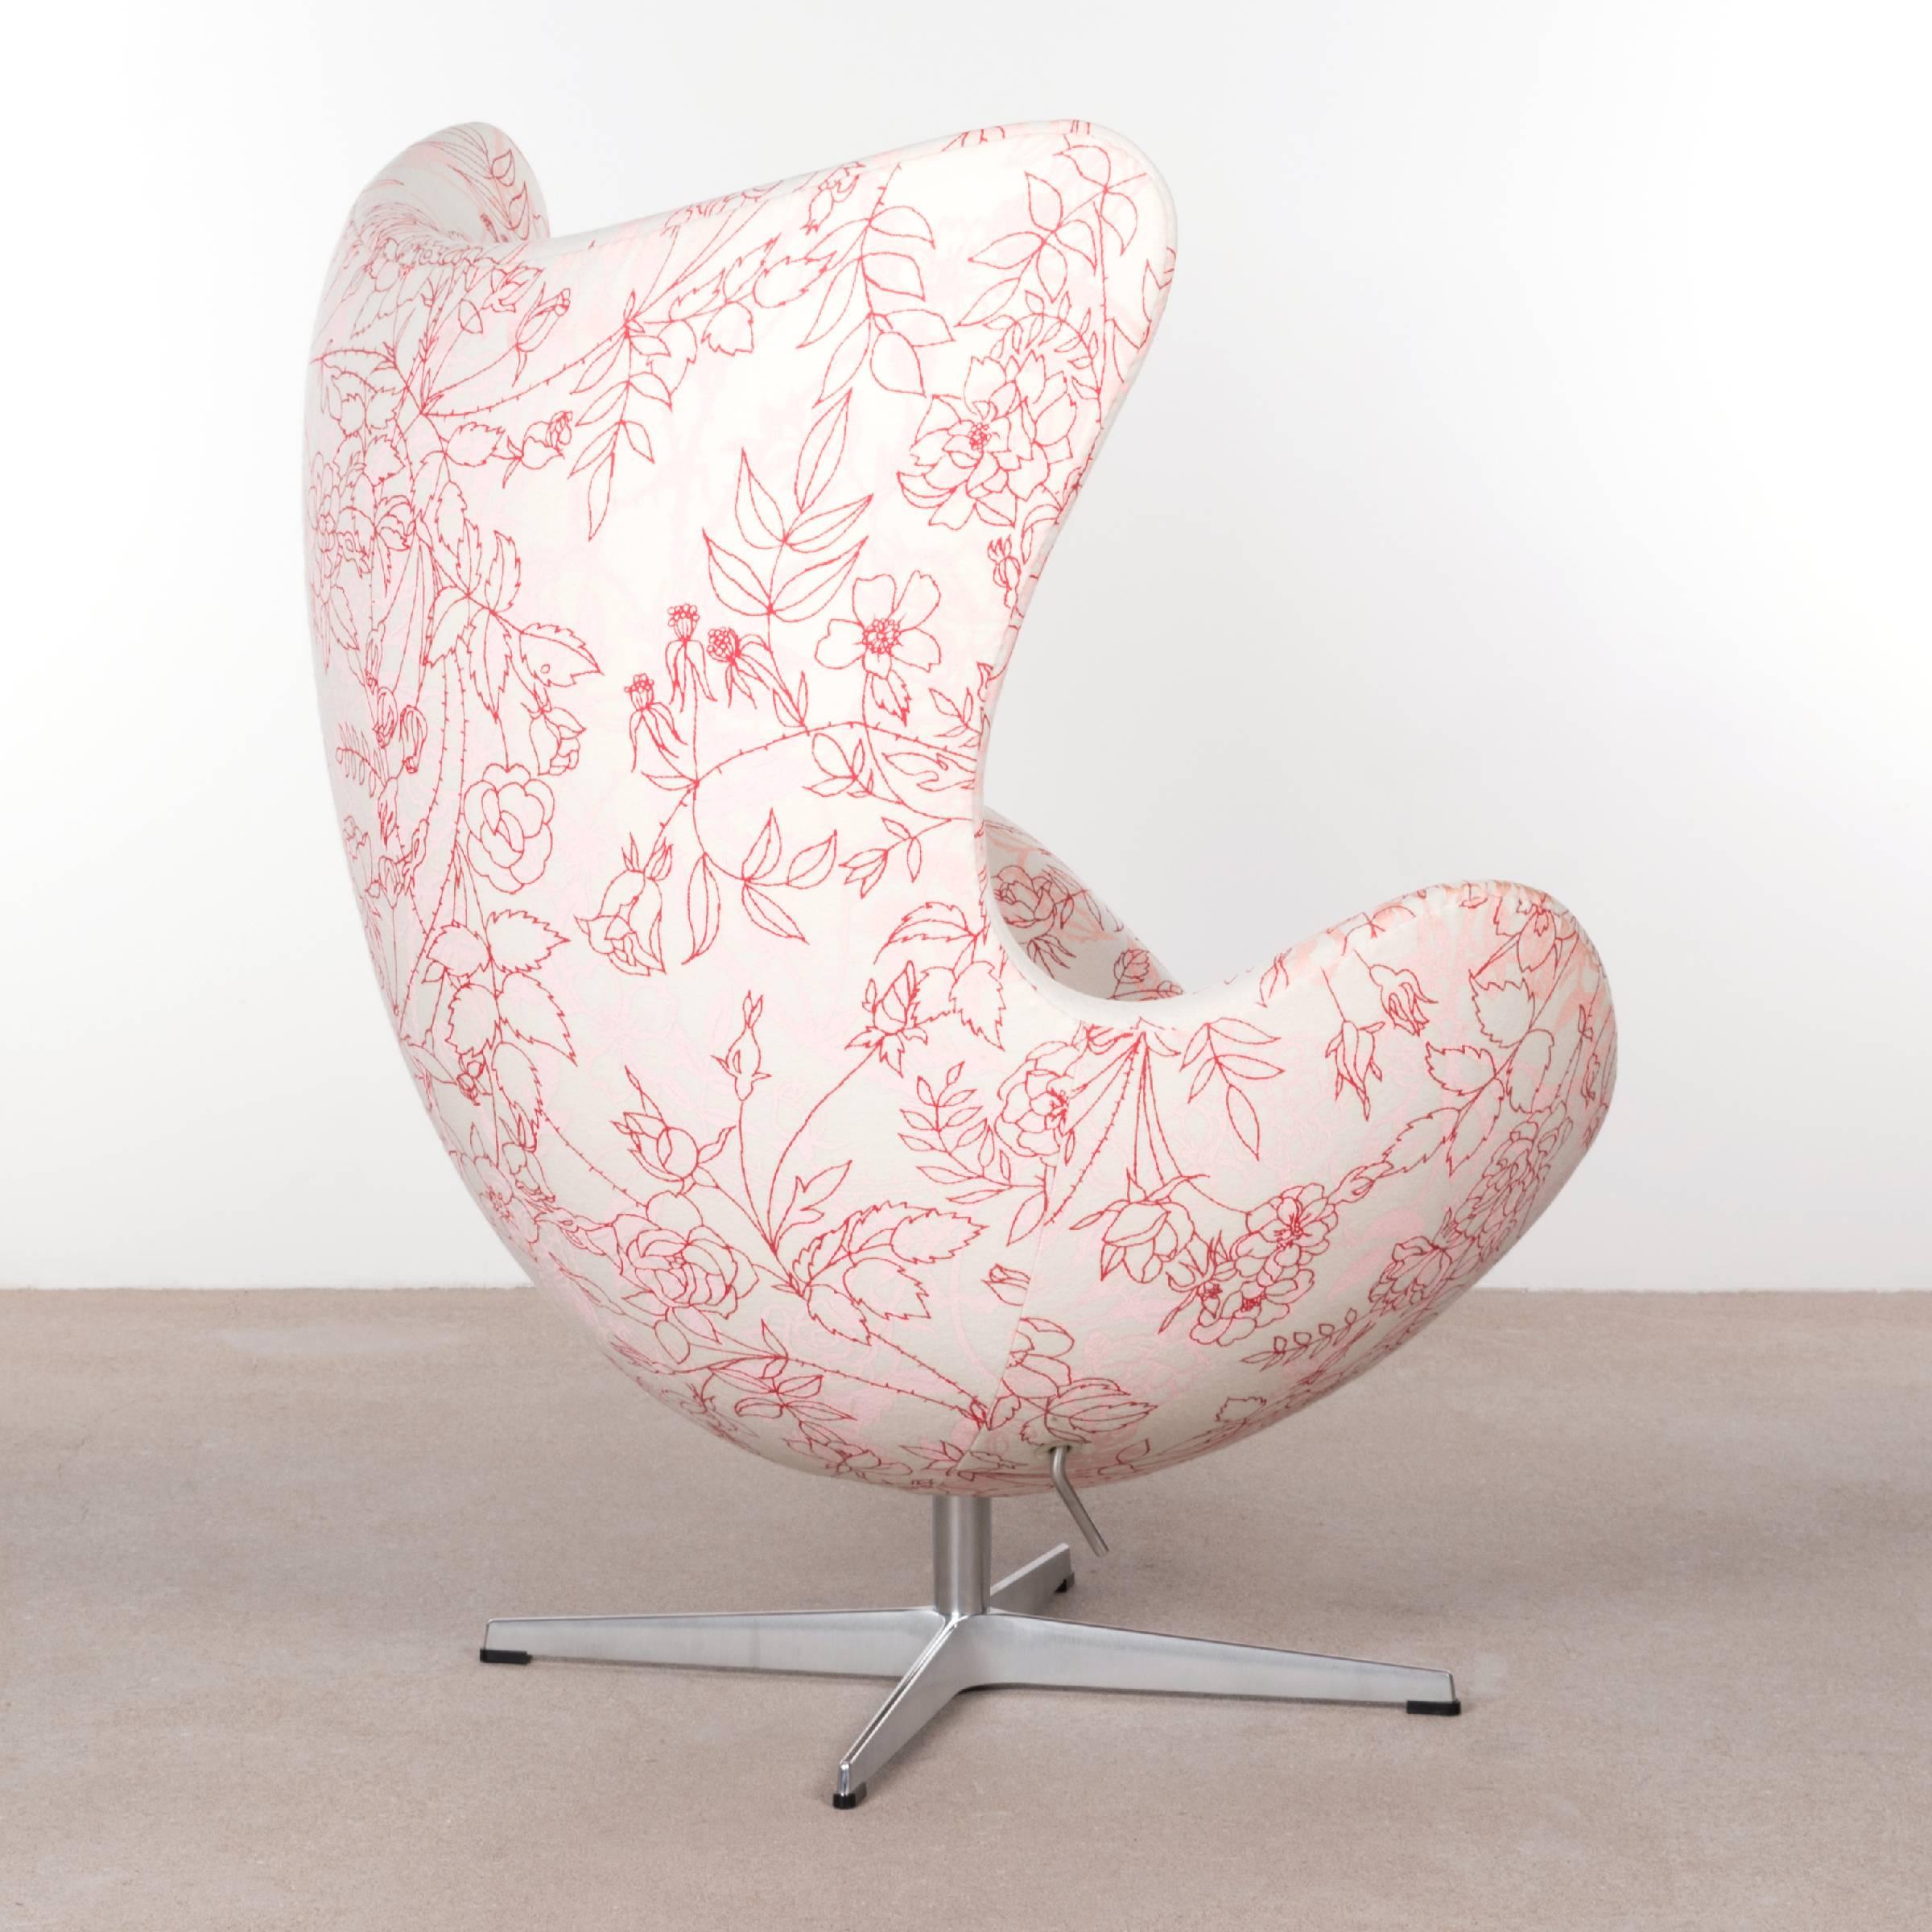 Danish Arne Jacobsen Egg Chair in Elegent Fabric with Rose Motifv for Fritz Hansen